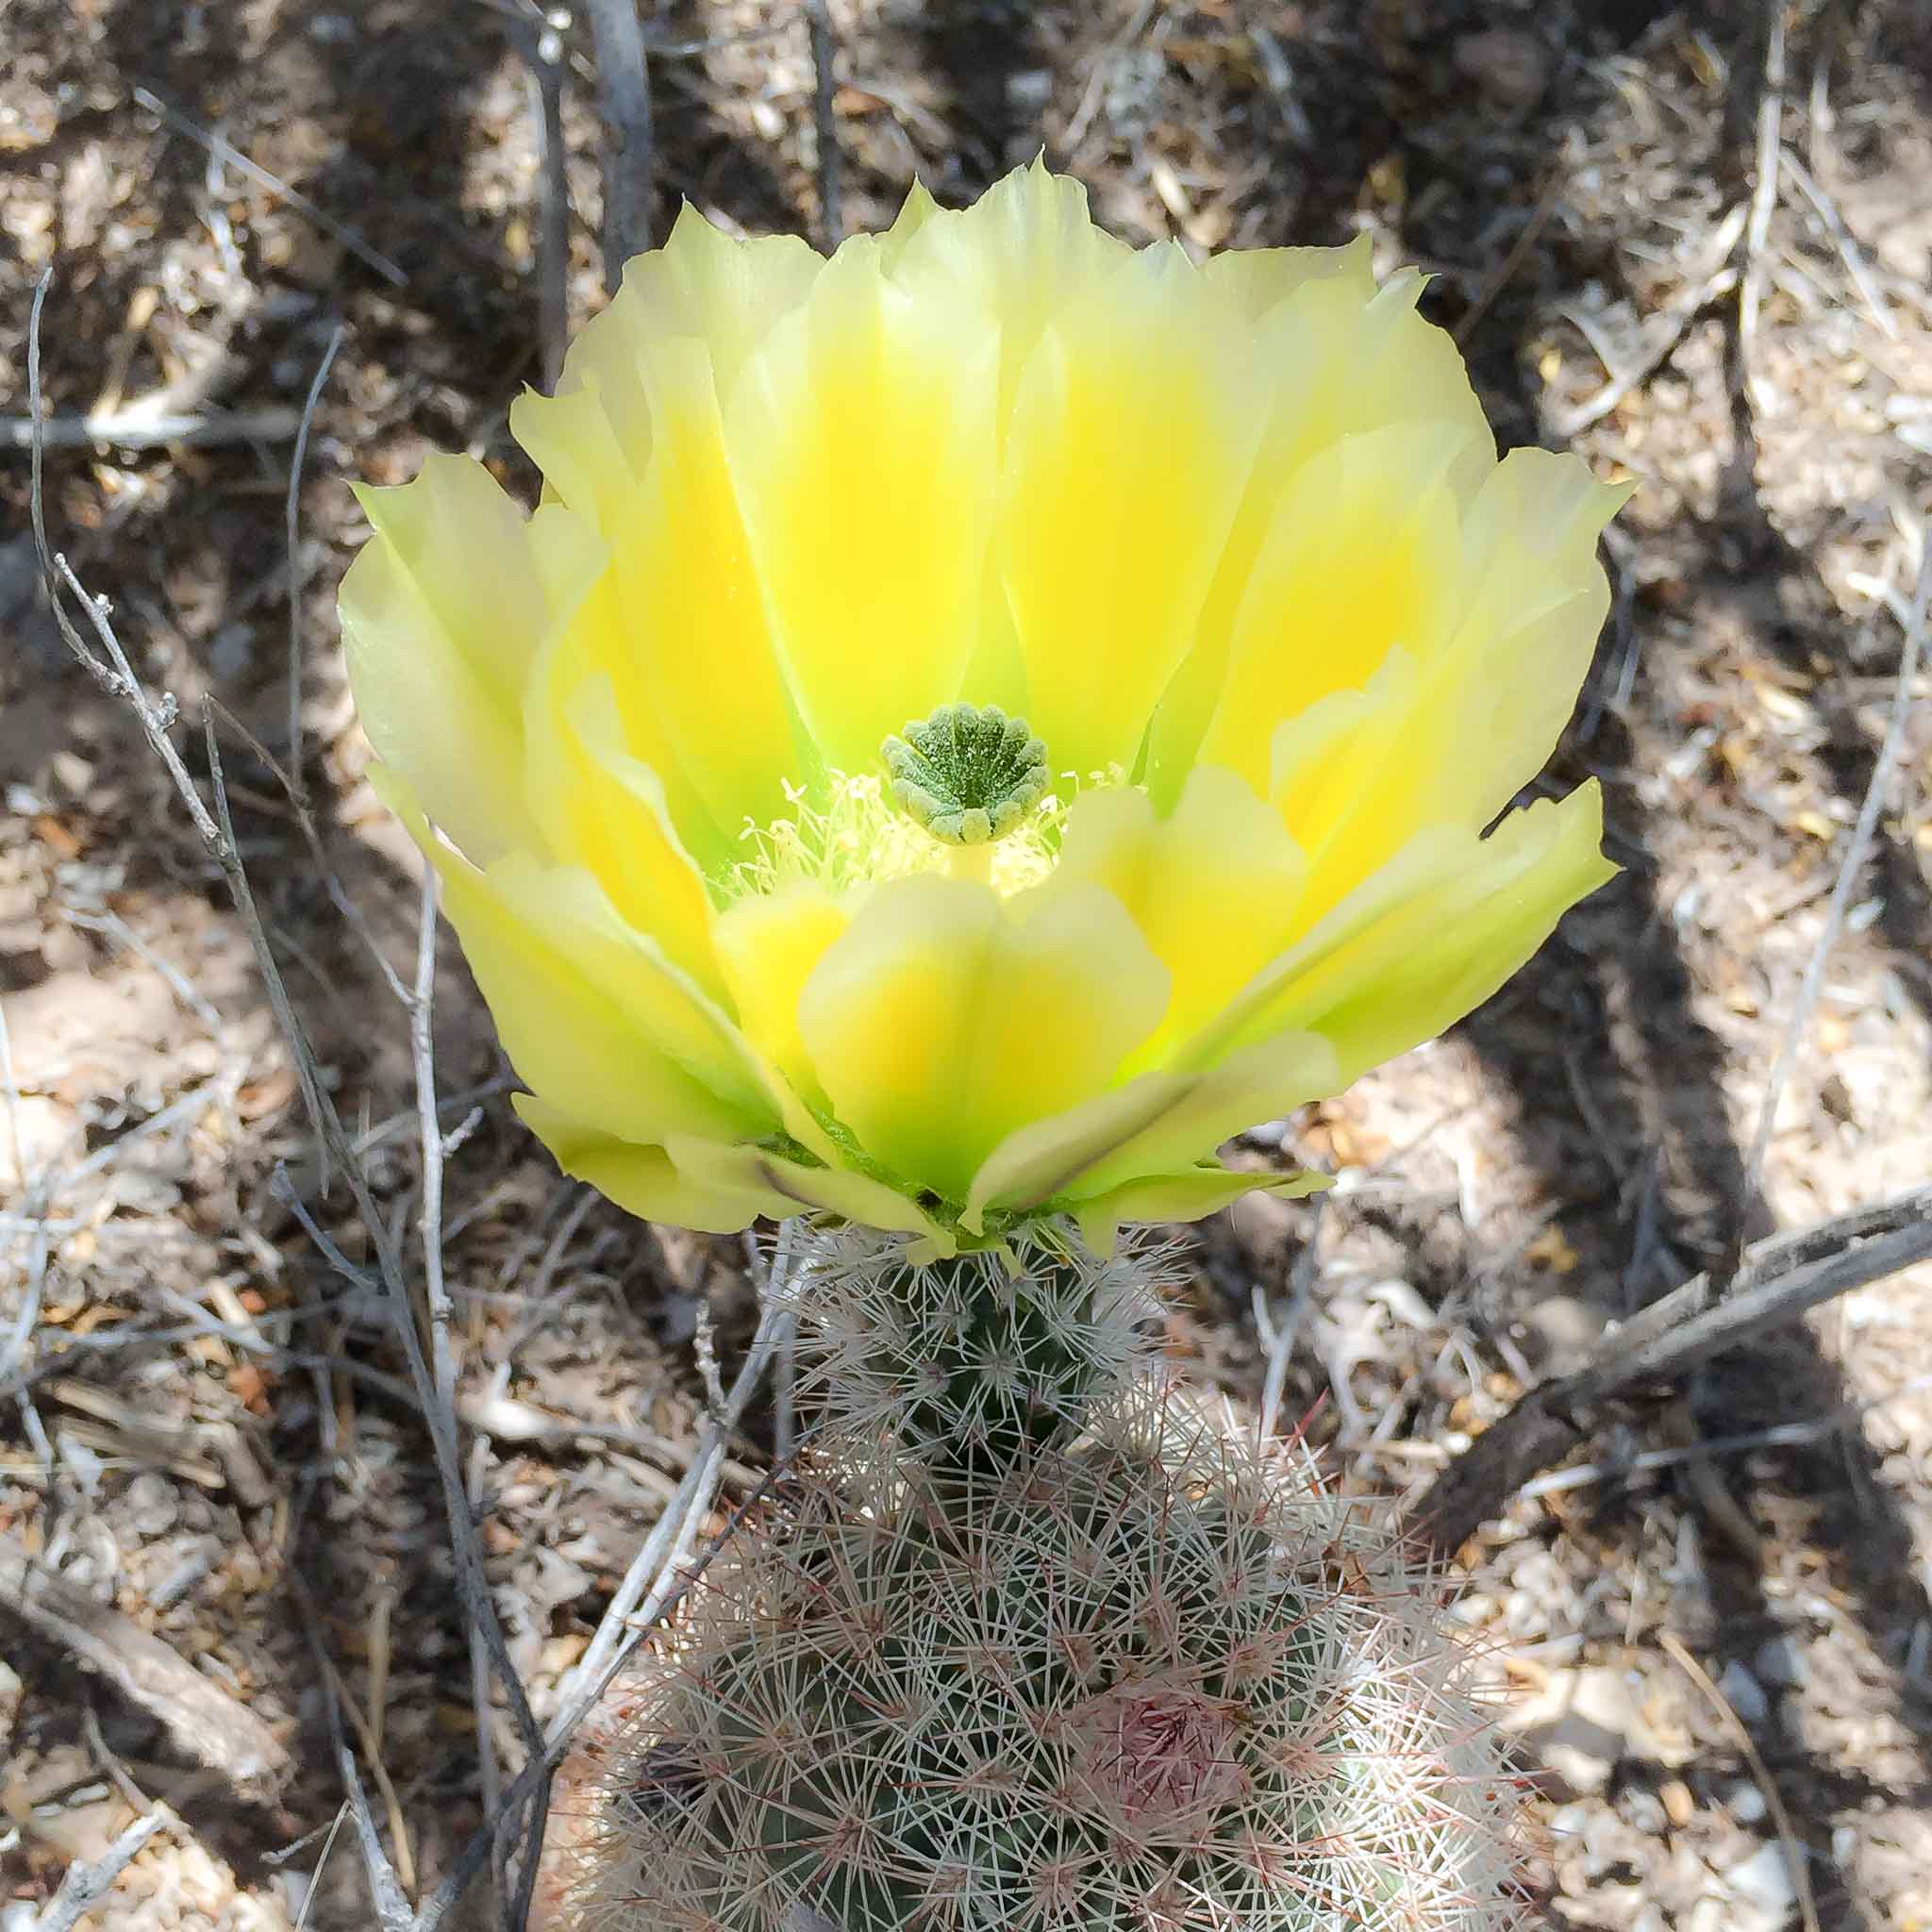 Yellow Cactus Flower, Oliver Lee Memorial State Park, Alamogordo NM, April 15, 2015